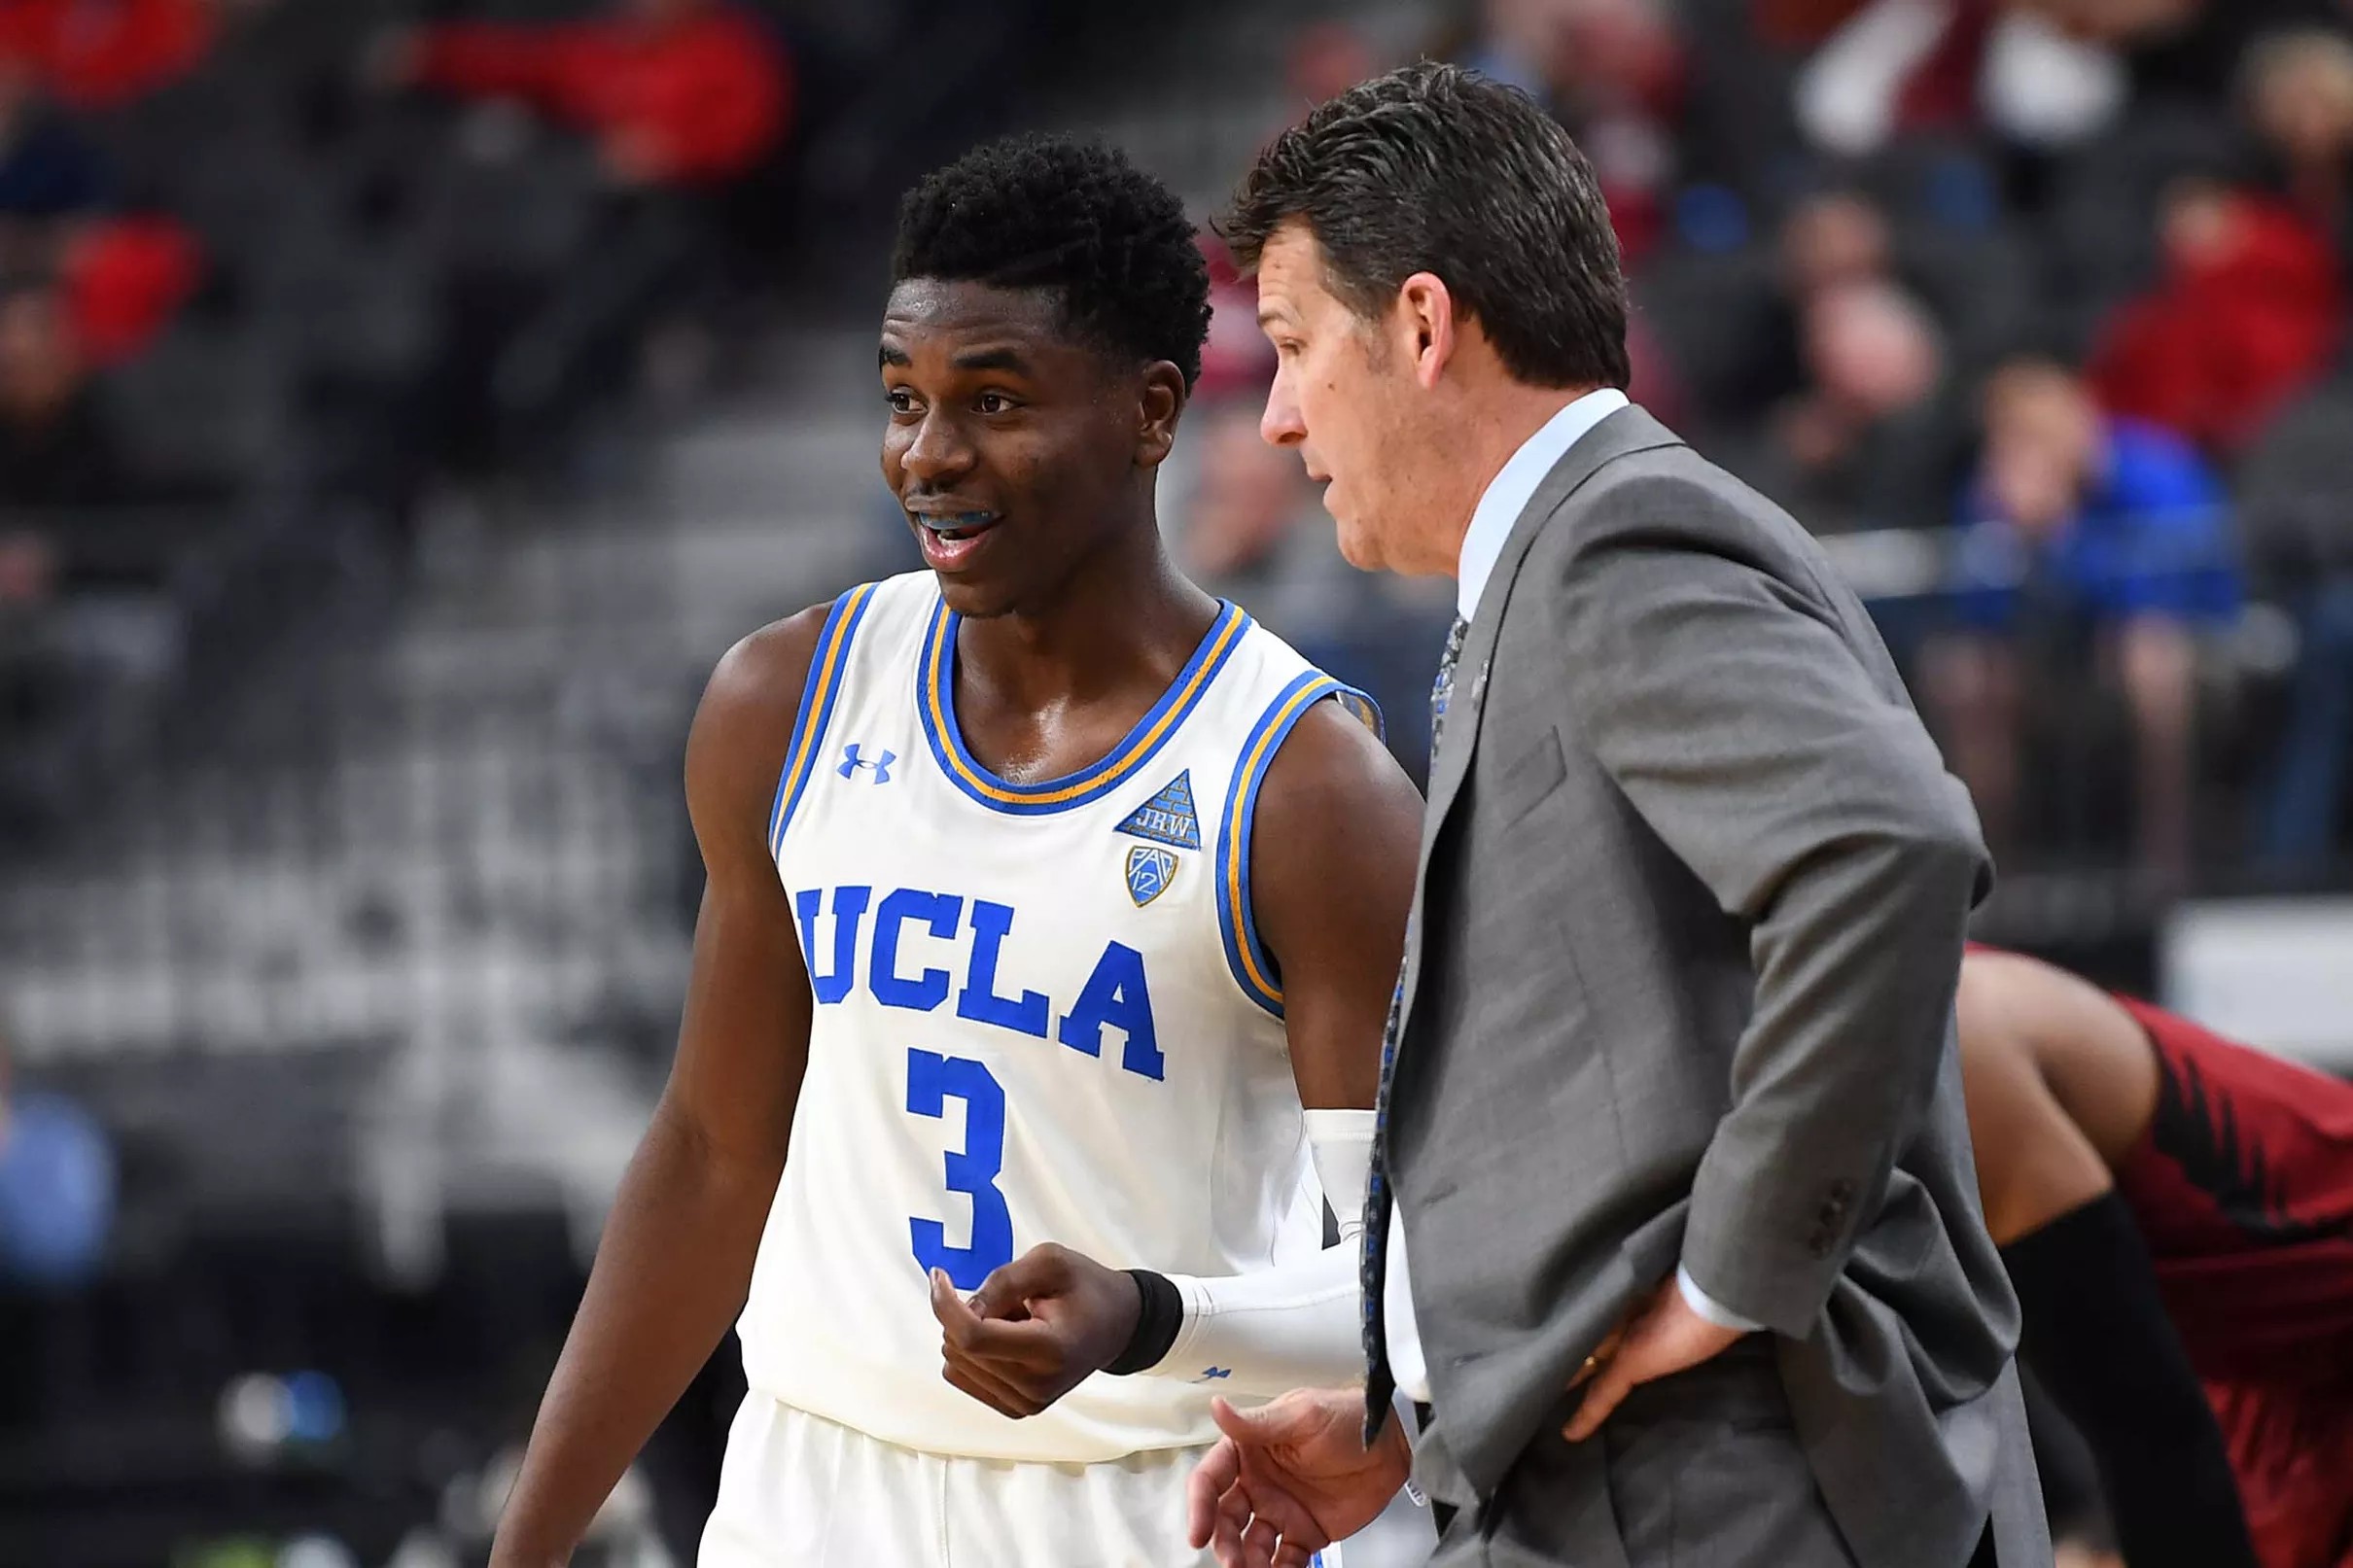 UCLA Gets an NCAA AtLarge Bid